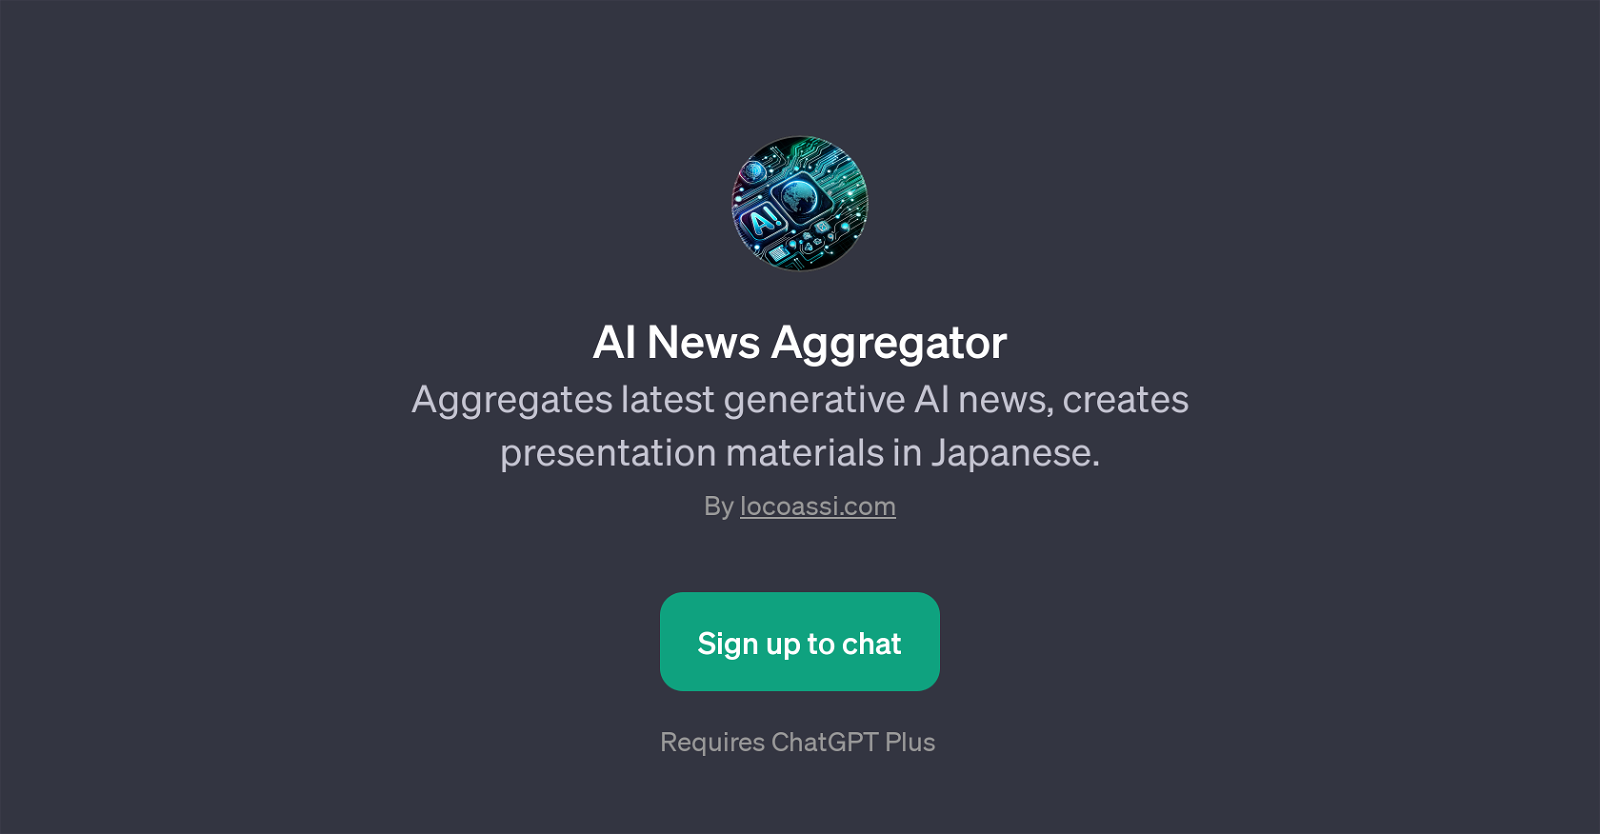 AI News Aggregator website